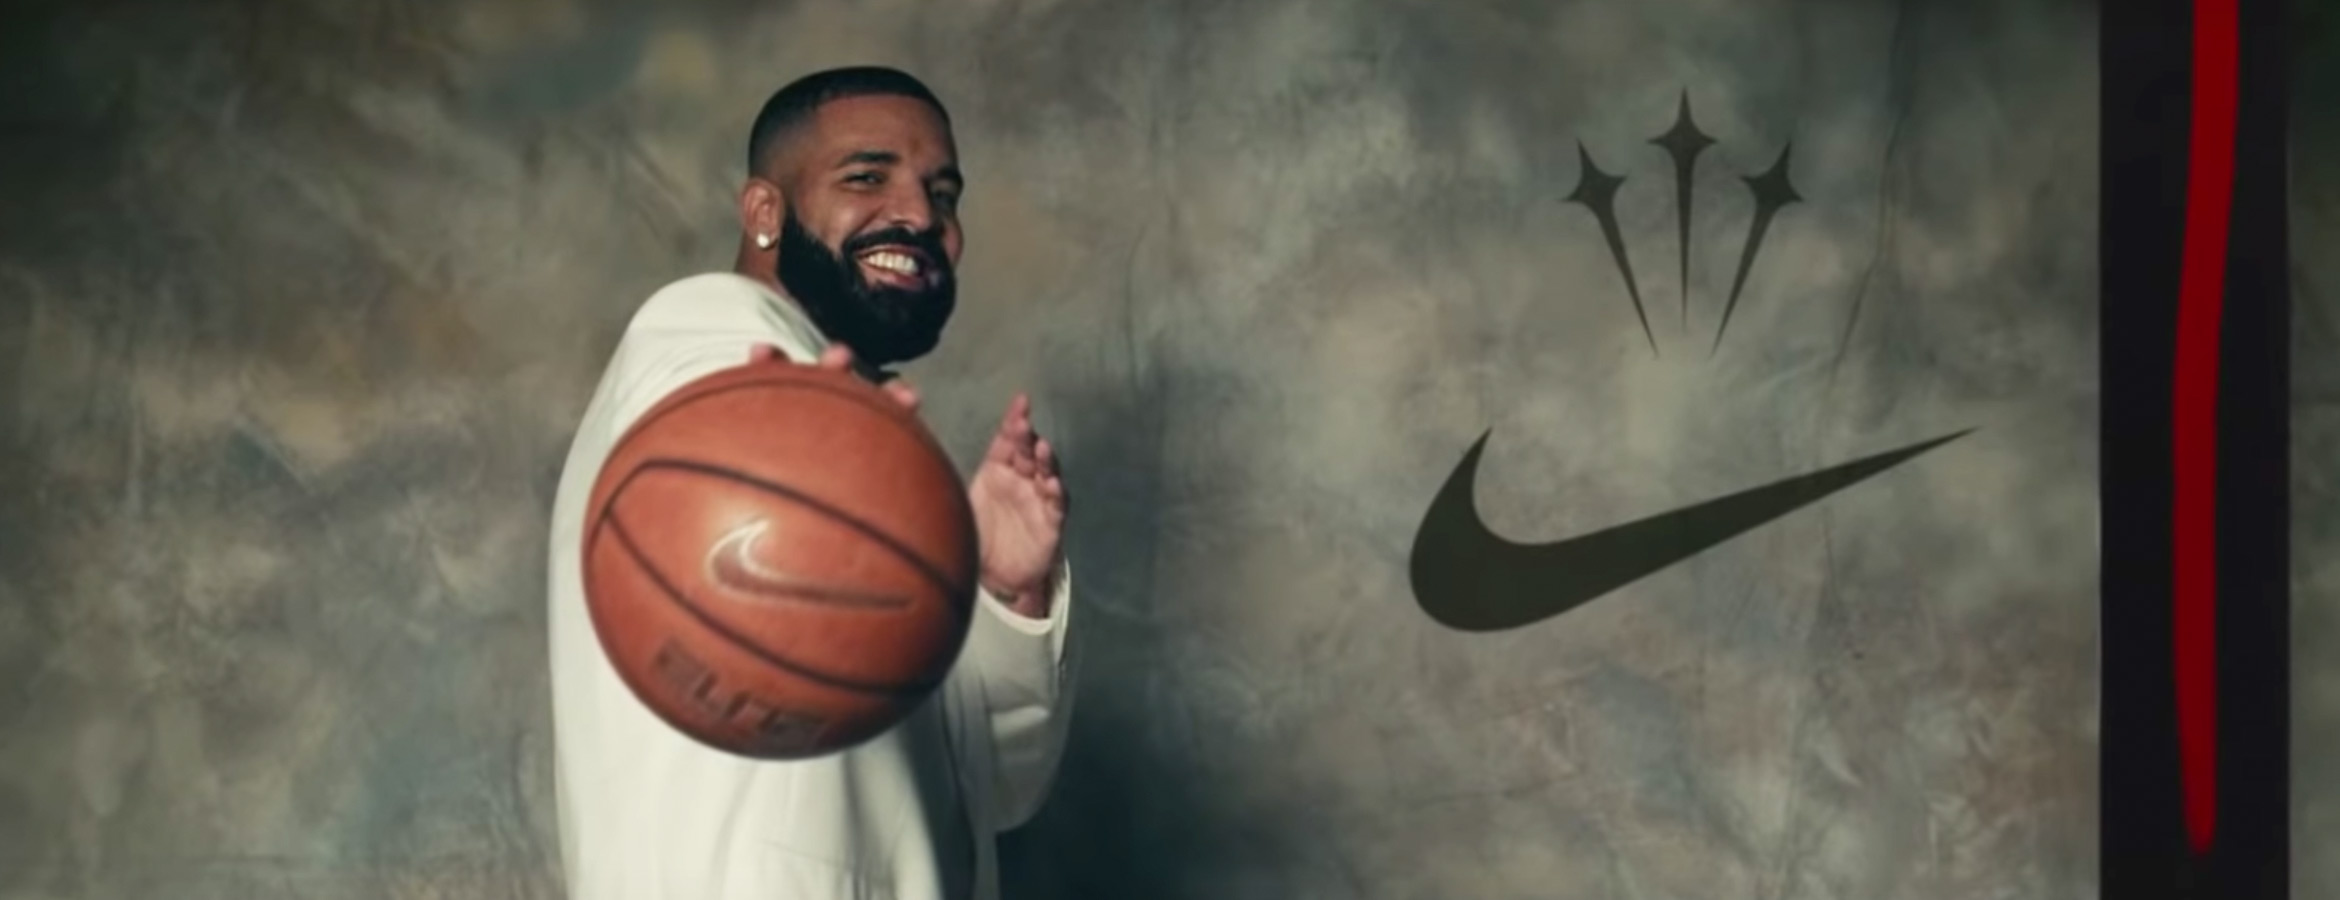 Ce clip de Drake affiche le logo plus souvent qu'une pub Nike La Réclame